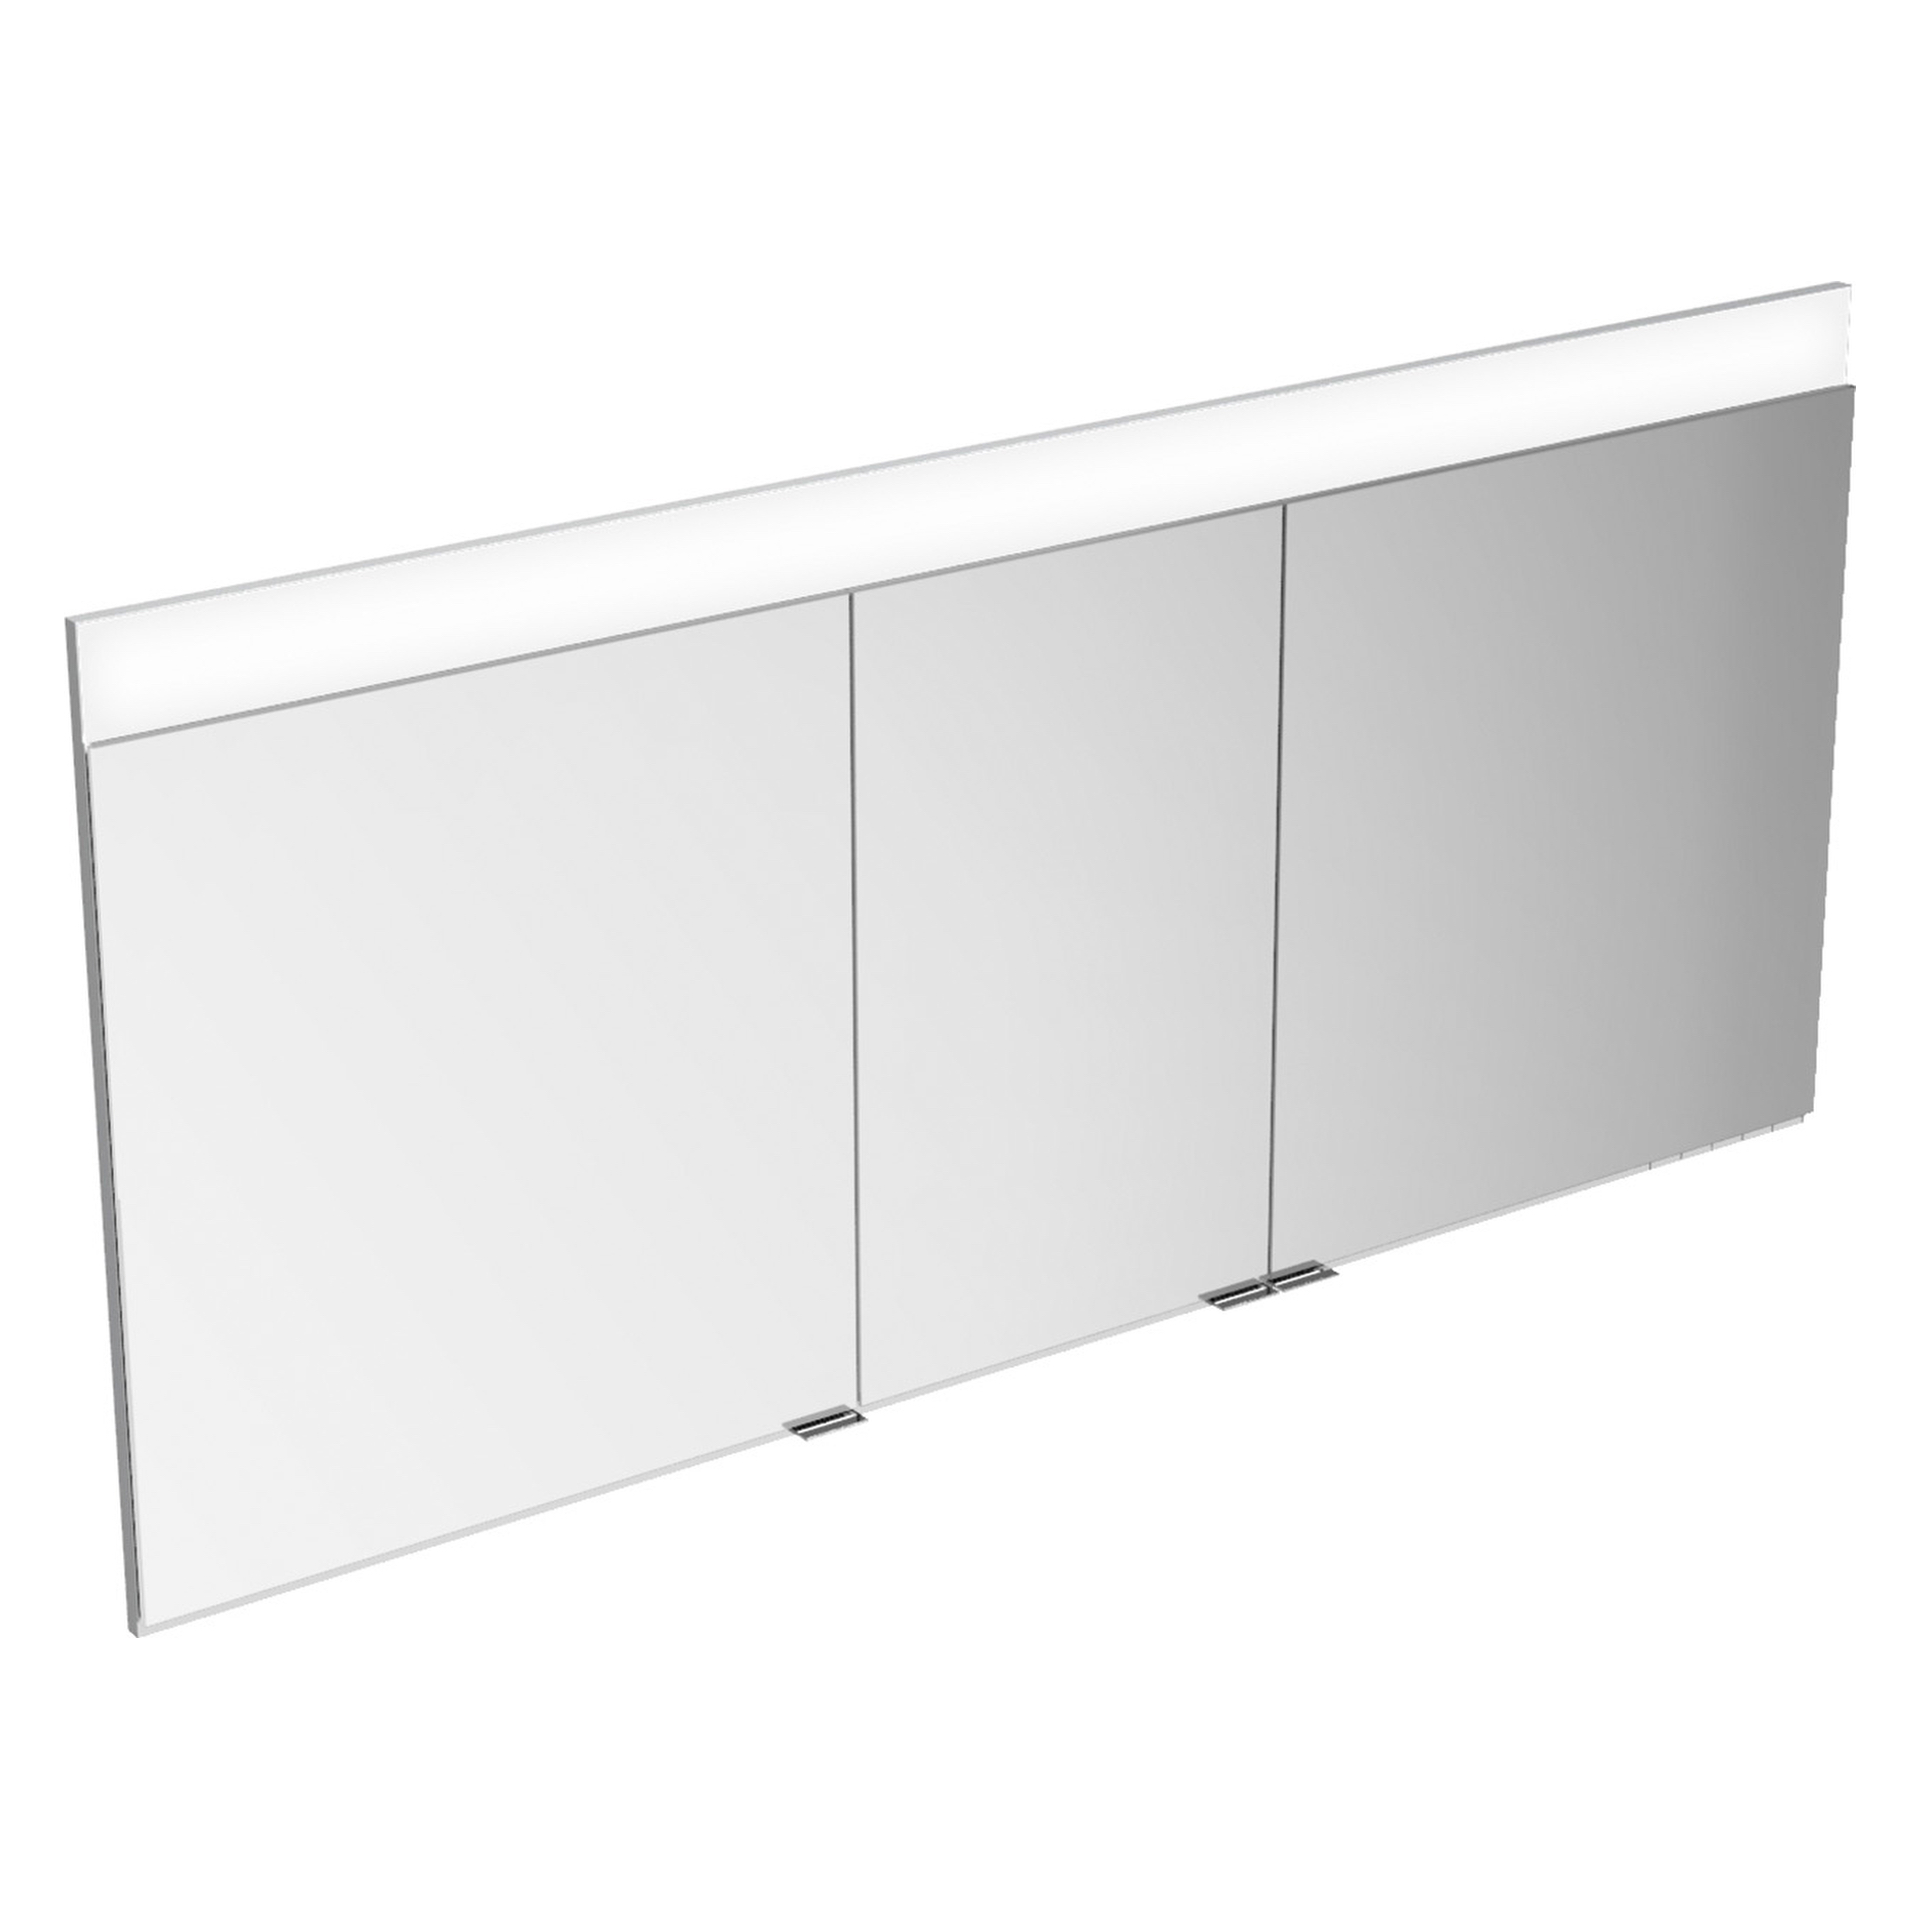 Edition 400 21503171303 Spiegelschrank Wandeinbau DALI 1410 × 650 × 154 mm silber-eloxiert